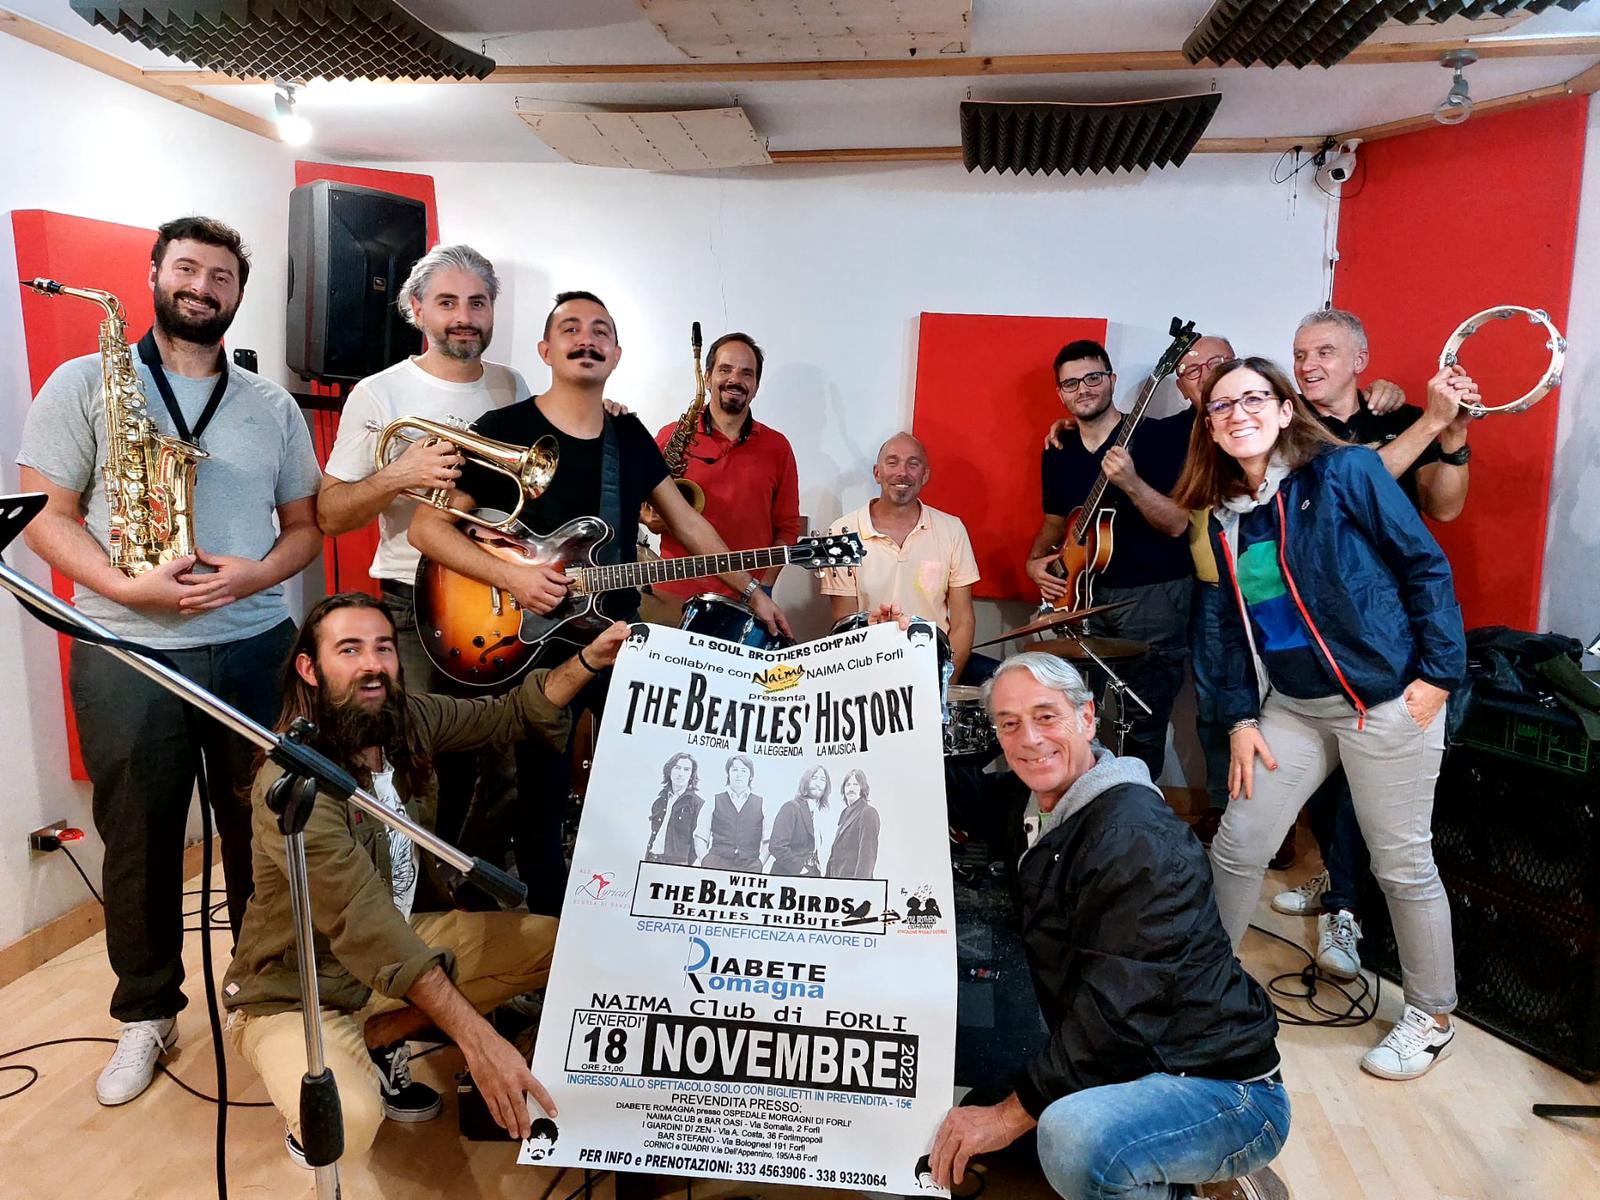 Venerdì 18 Novembre Al Naima Club Di Forlì Per Lo Spettacolo “The Beatles’ History” Con I Black Birds Beatles Tribute Per Sostenere I Progetti Di Diabete Romagna